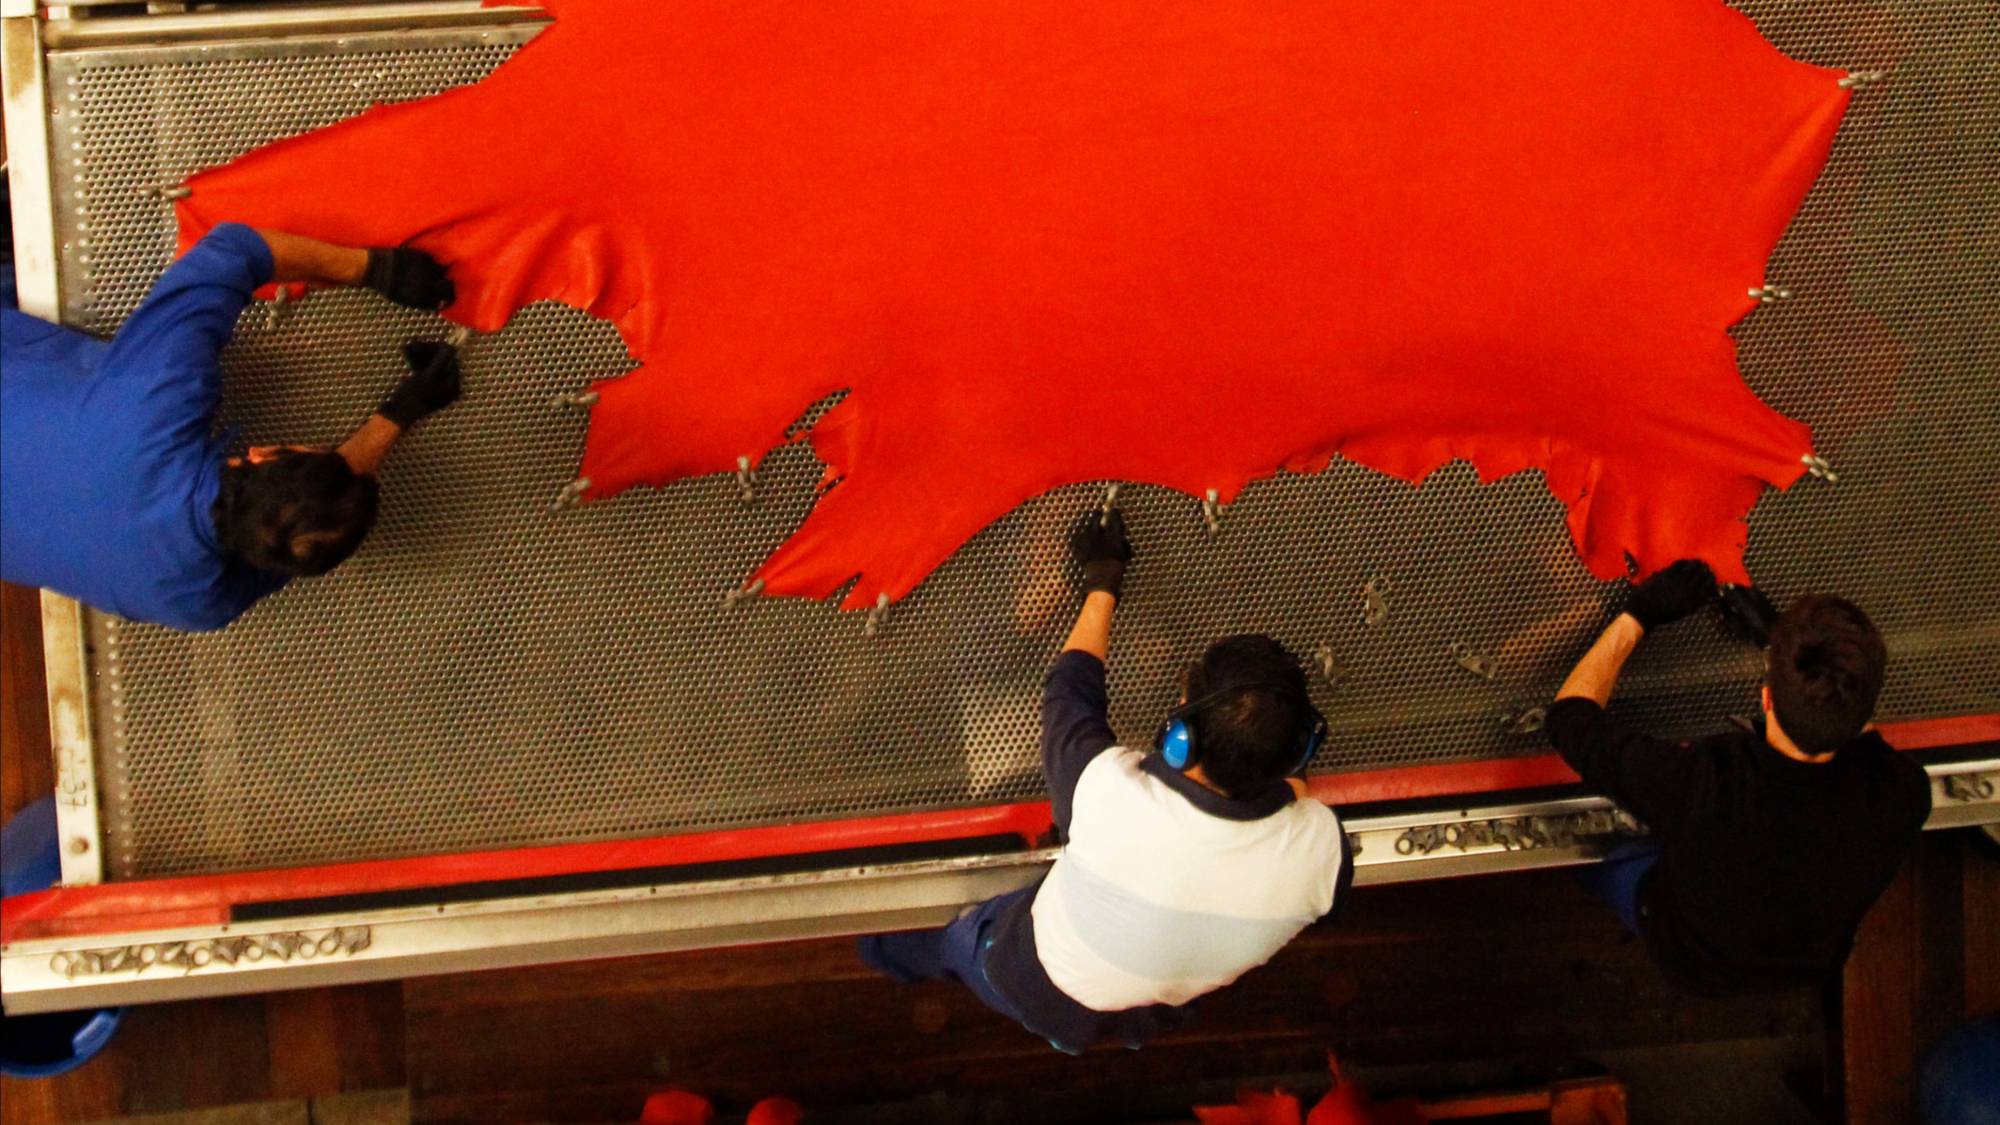 Herstellung von Leder. Drei Männer spannen eine rote Lederhaut auf einen Spannrahmen